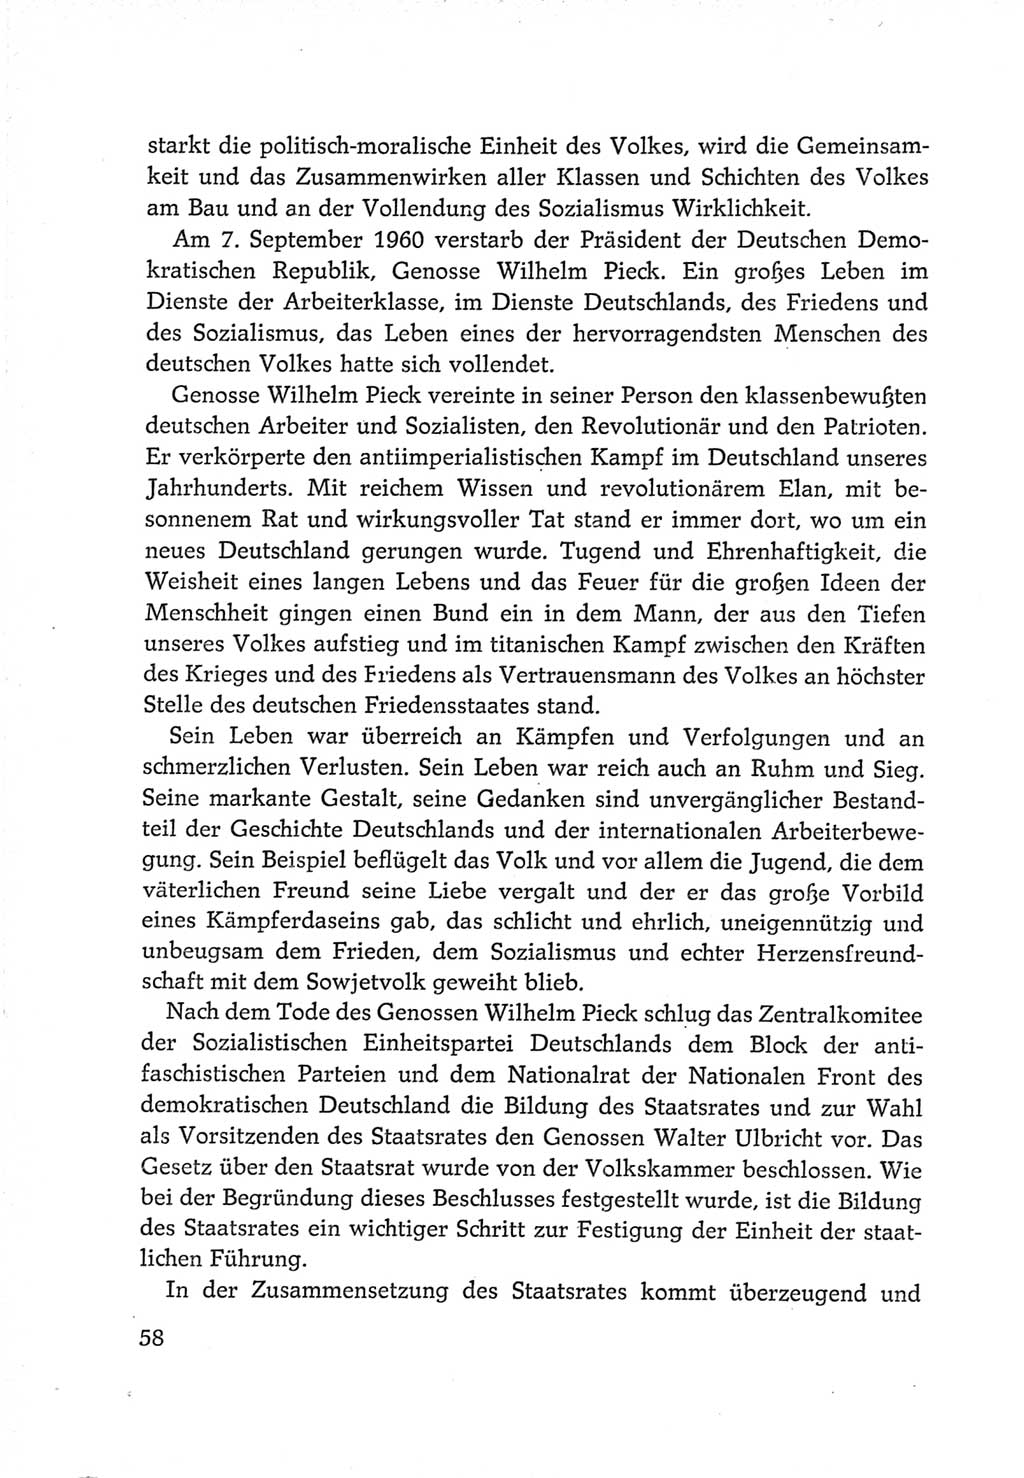 Protokoll der Verhandlungen des Ⅵ. Parteitages der Sozialistischen Einheitspartei Deutschlands (SED) [Deutsche Demokratische Republik (DDR)] 1963, Band Ⅳ, Seite 58 (Prot. Verh. Ⅵ. PT SED DDR 1963, Bd. Ⅳ, S. 58)